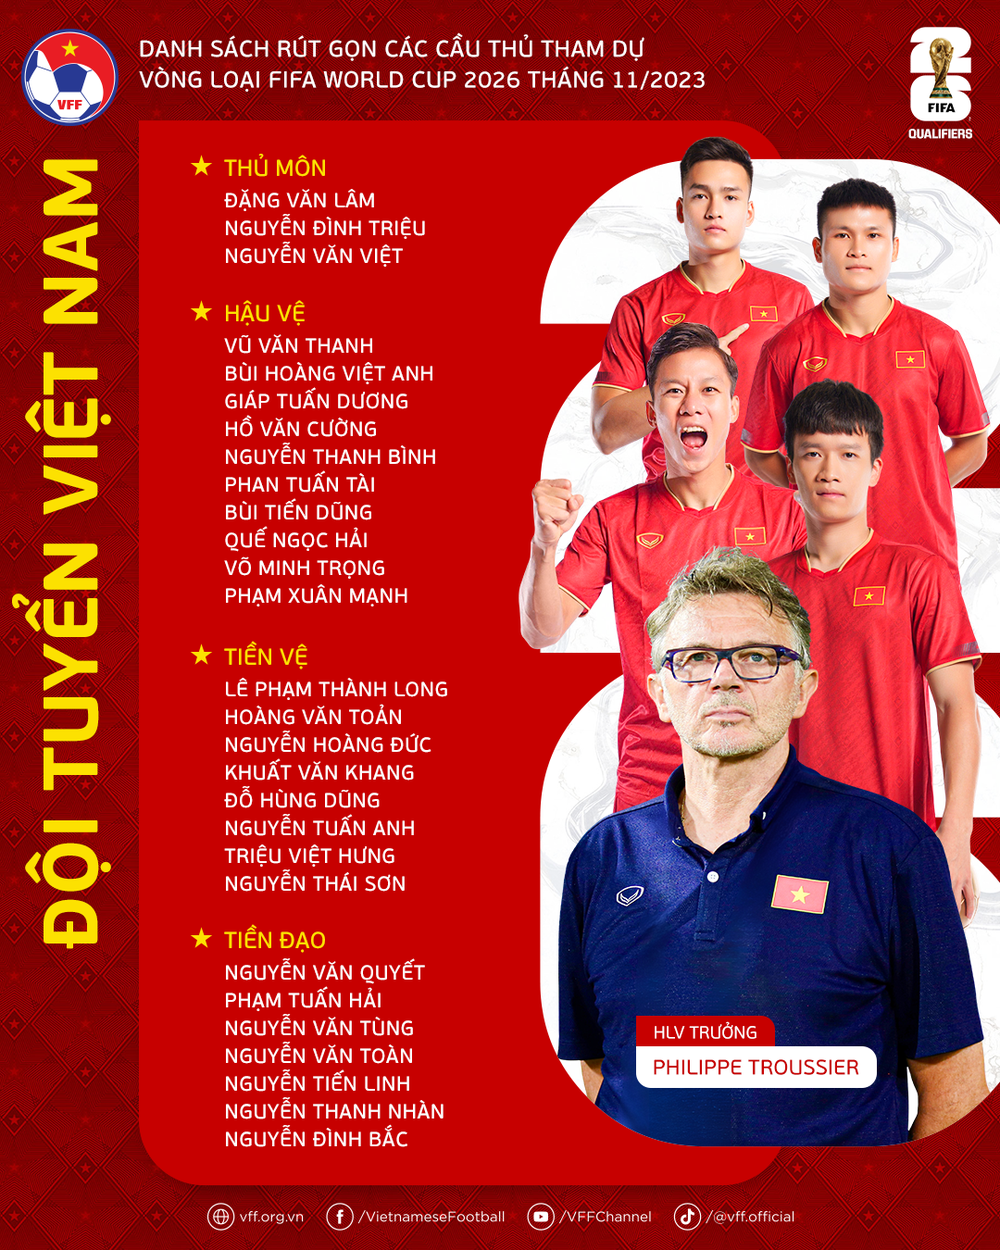 Danh sách đội tuyển Việt Nam: HLV Troussier gạch tên học trò cưng vào phút chót - Ảnh 1.